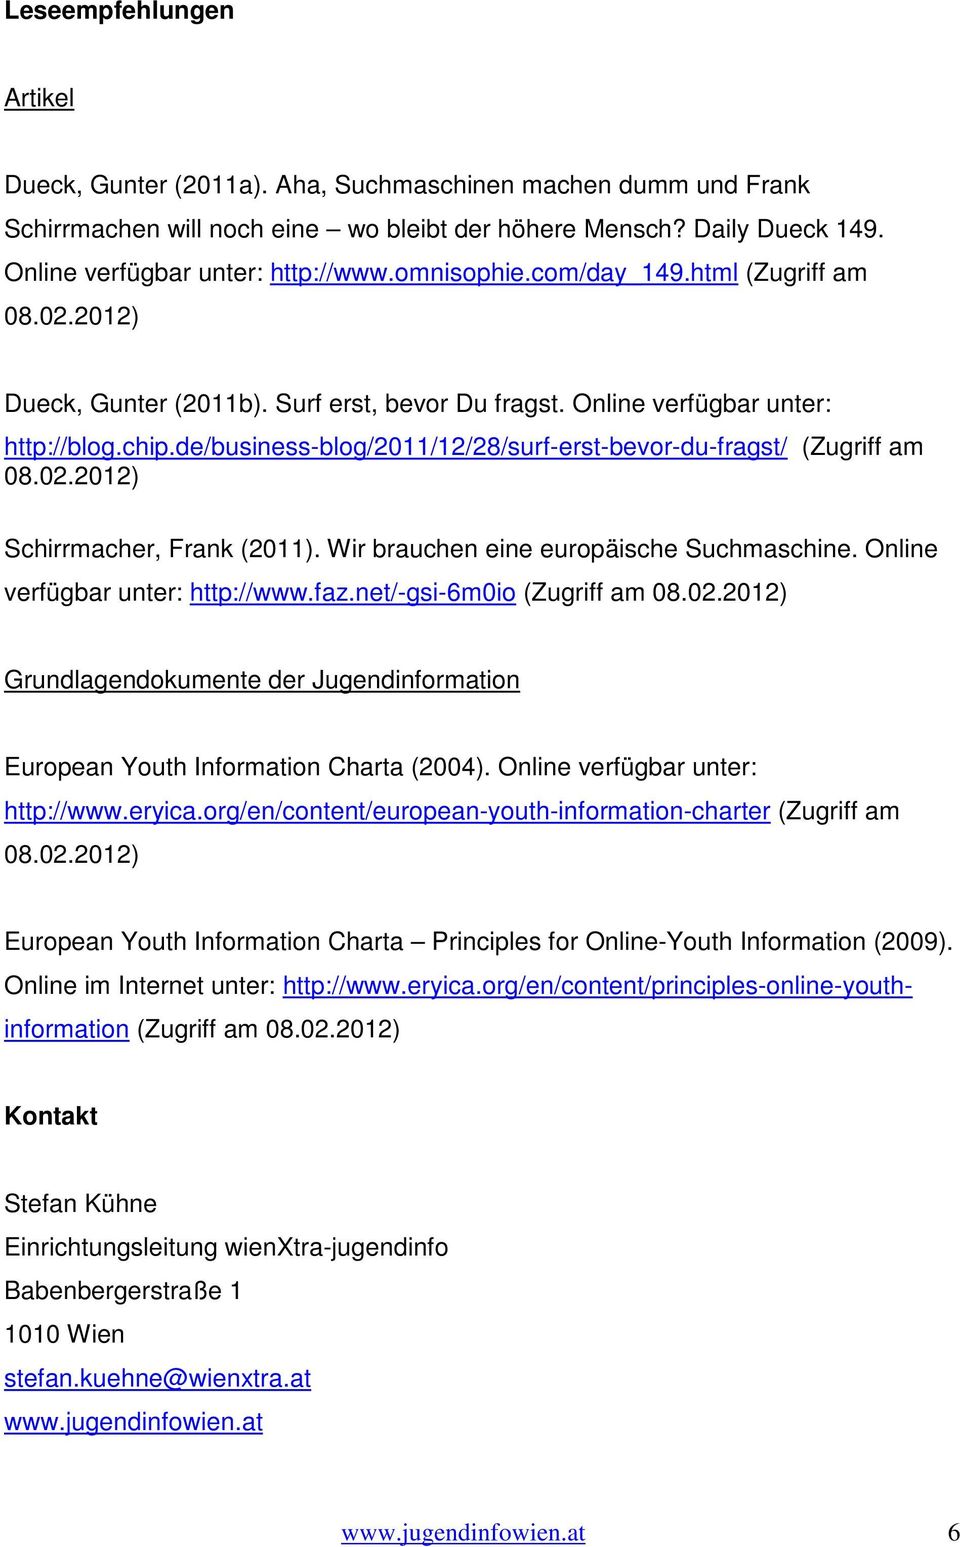 de/business-blog/2011/12/28/surf-erst-bevor-du-fragst/ (Zugriff am 08.02.2012) Schirrmacher, Frank (2011). Wir brauchen eine europäische Suchmaschine. Online verfügbar unter: http://www.faz.